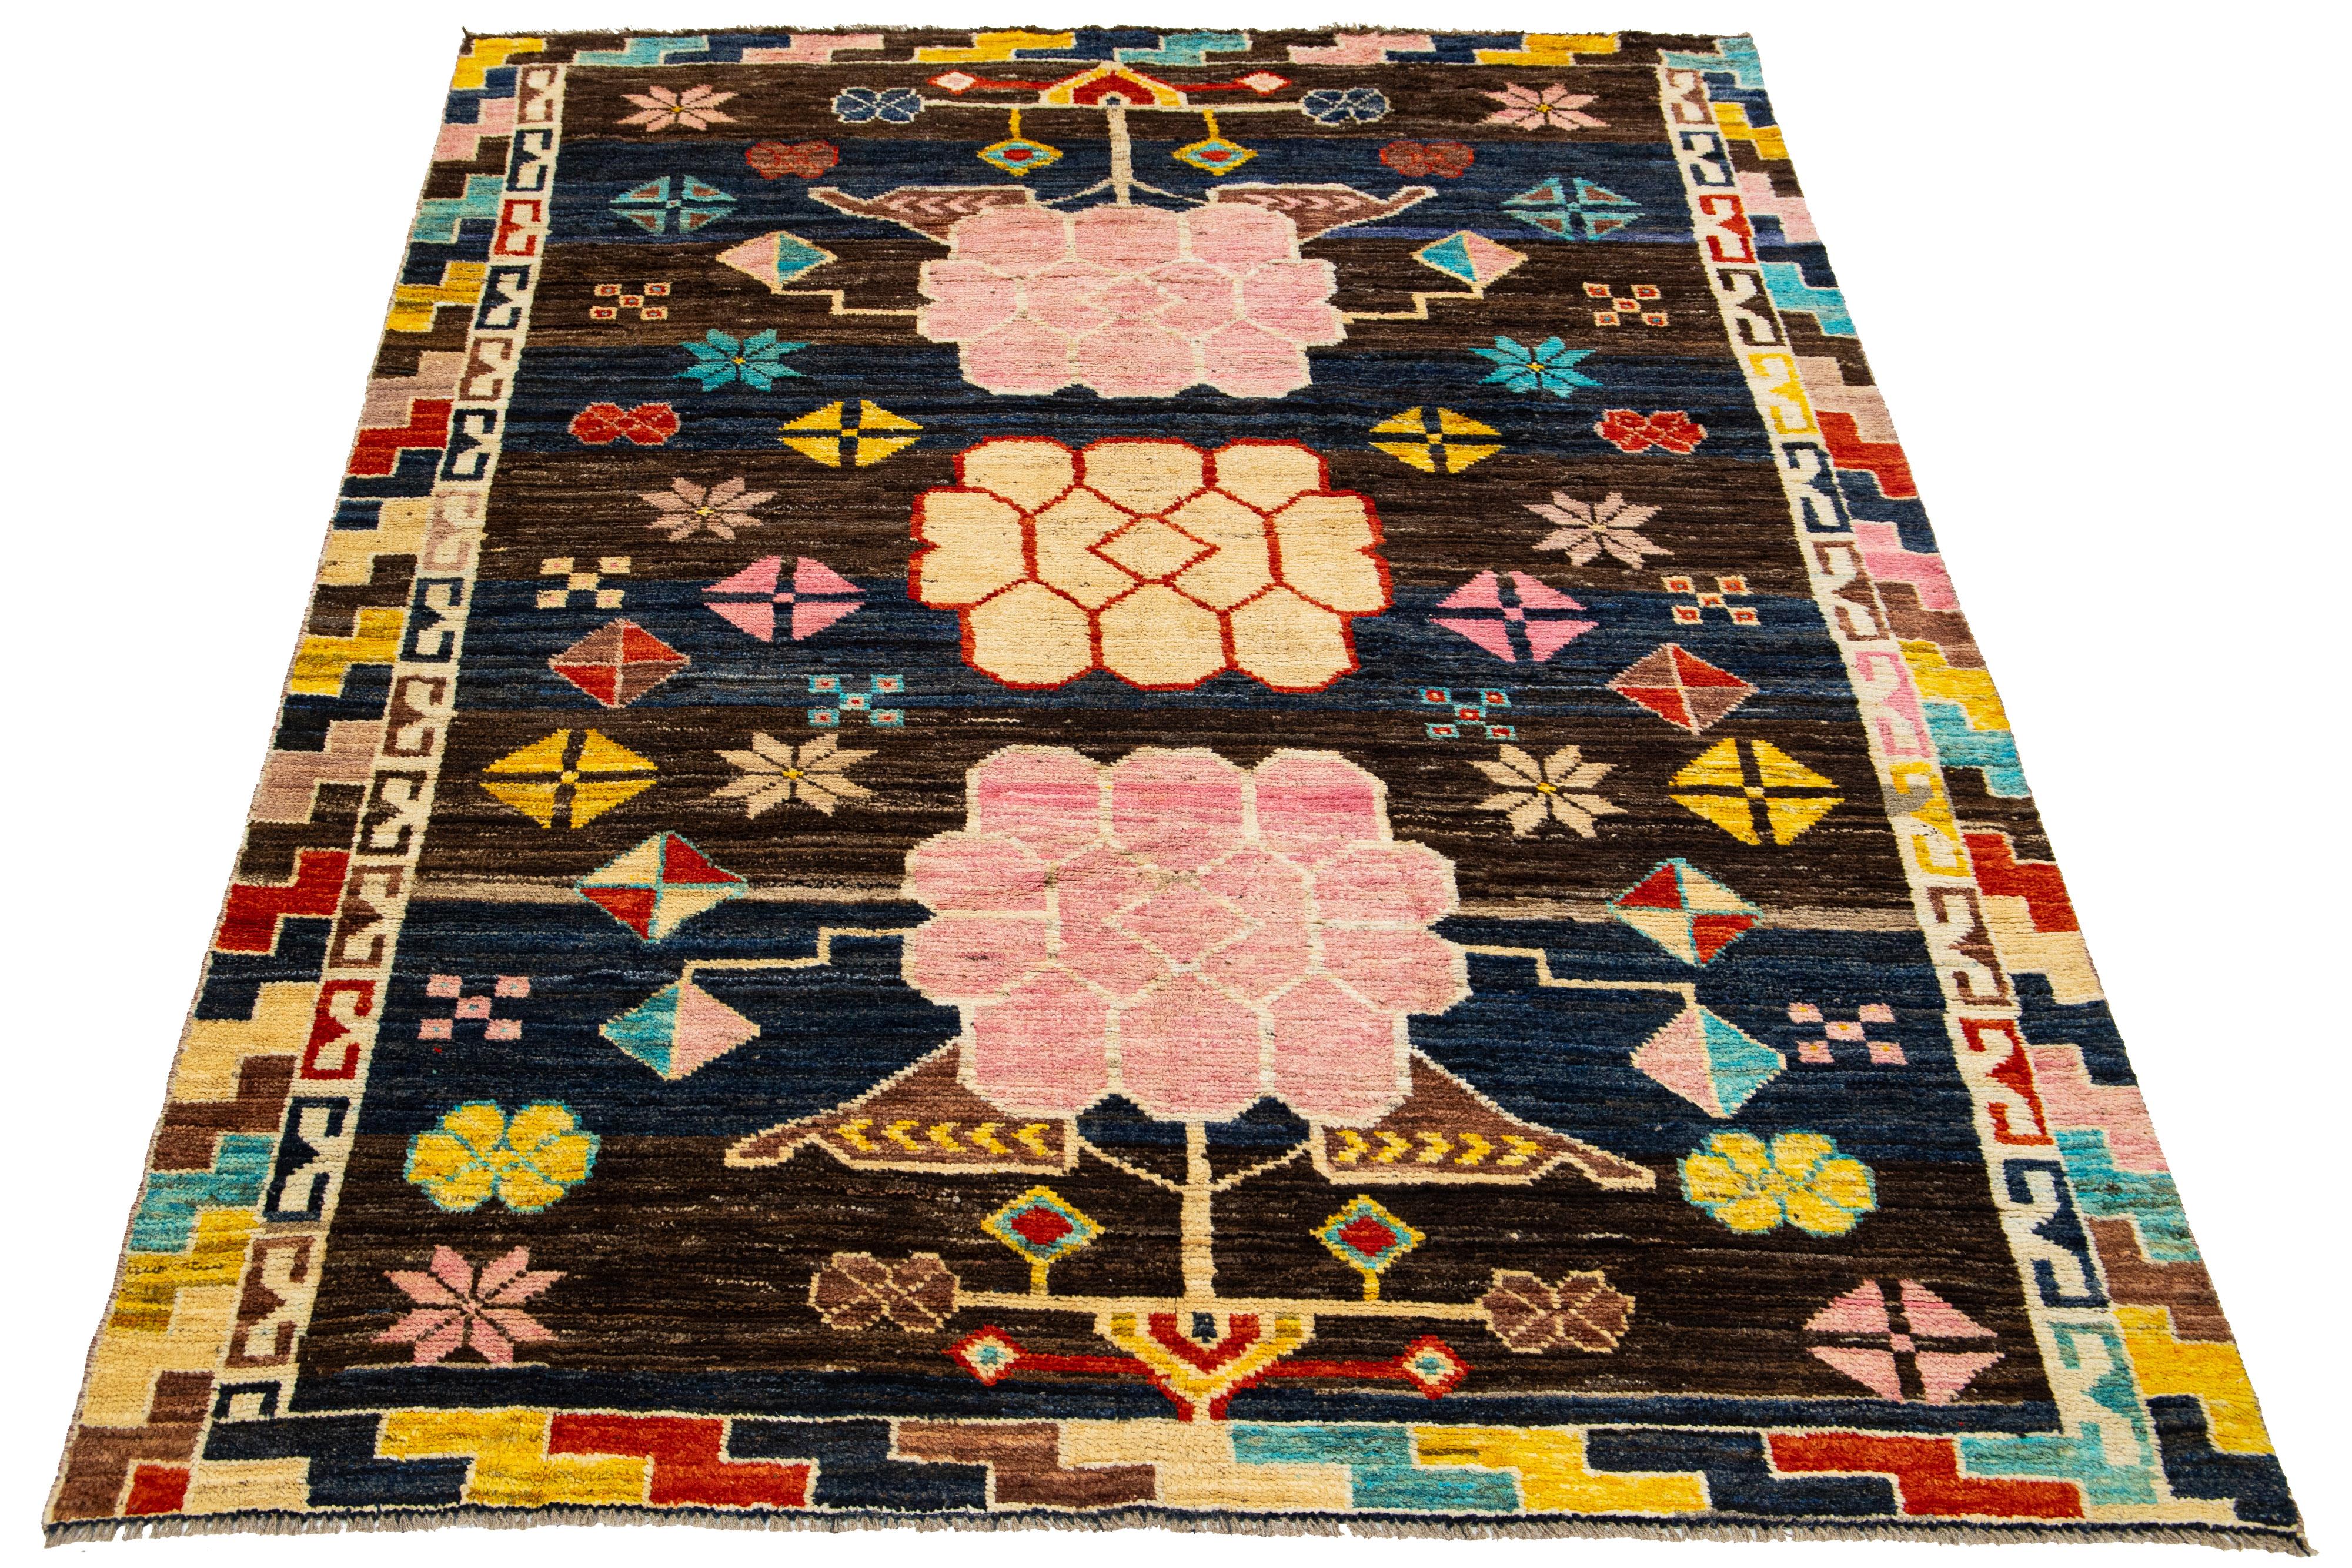 Ce tapis en laine présente une version moderne du style Art déco, avec un champ de couleurs bleu et marron saisissant. Le tapis présente un motif allover captivant dans une multitude de couleurs, ajoutant de l'éclat à n'importe quel espace.

Ce